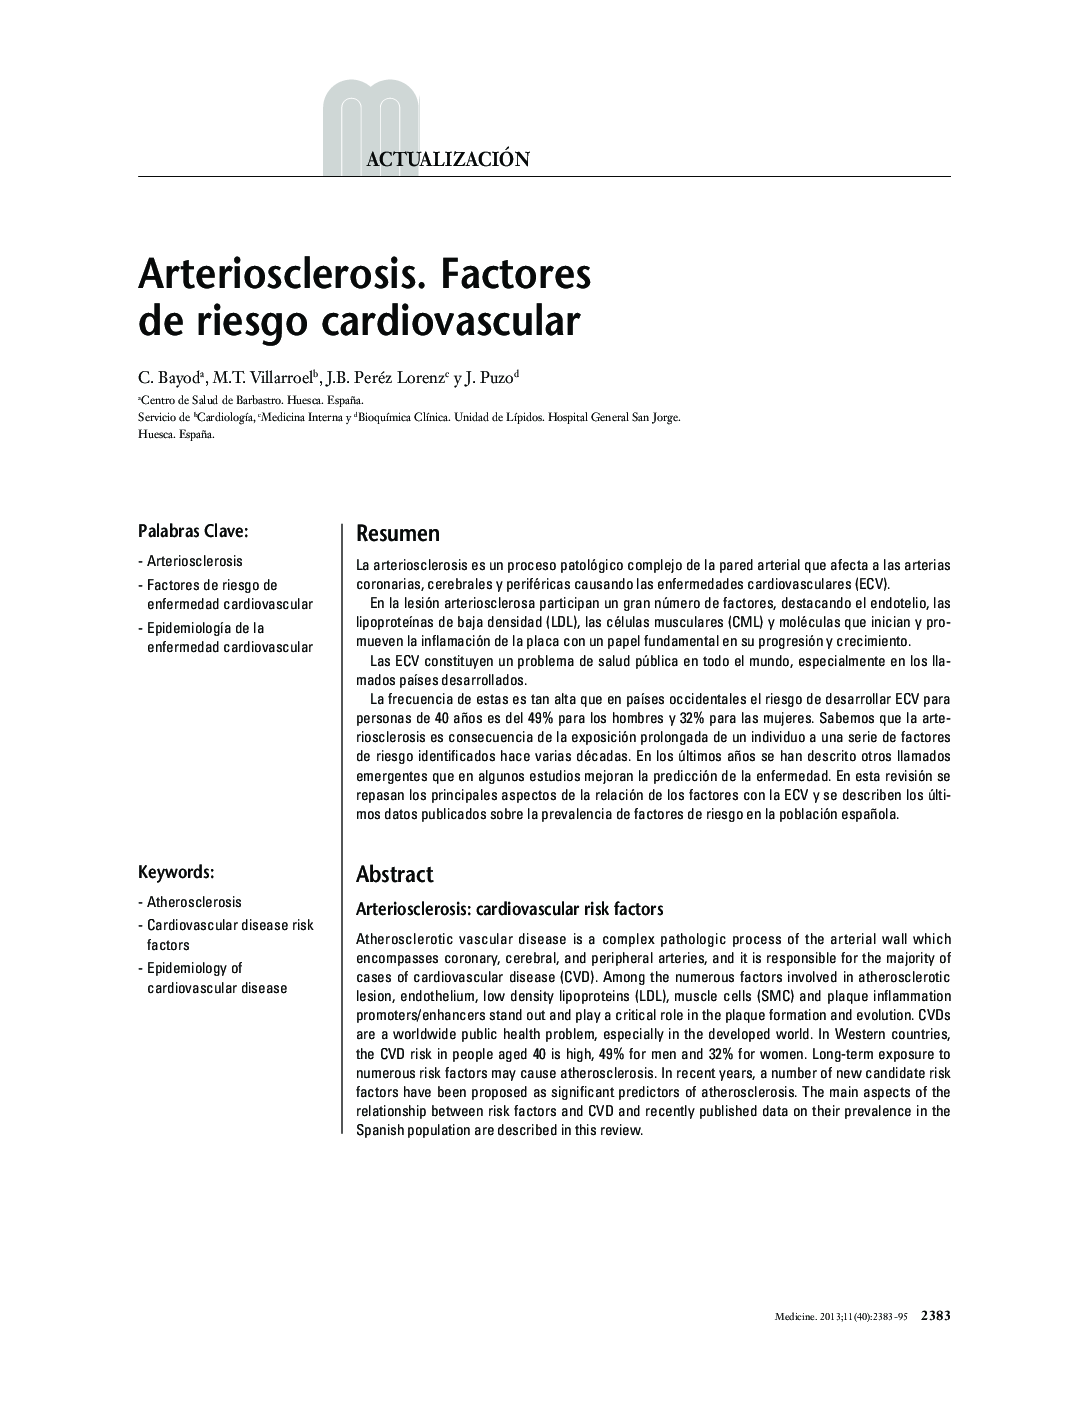 Arteriosclerosis. Factores de riesgo cardiovascular